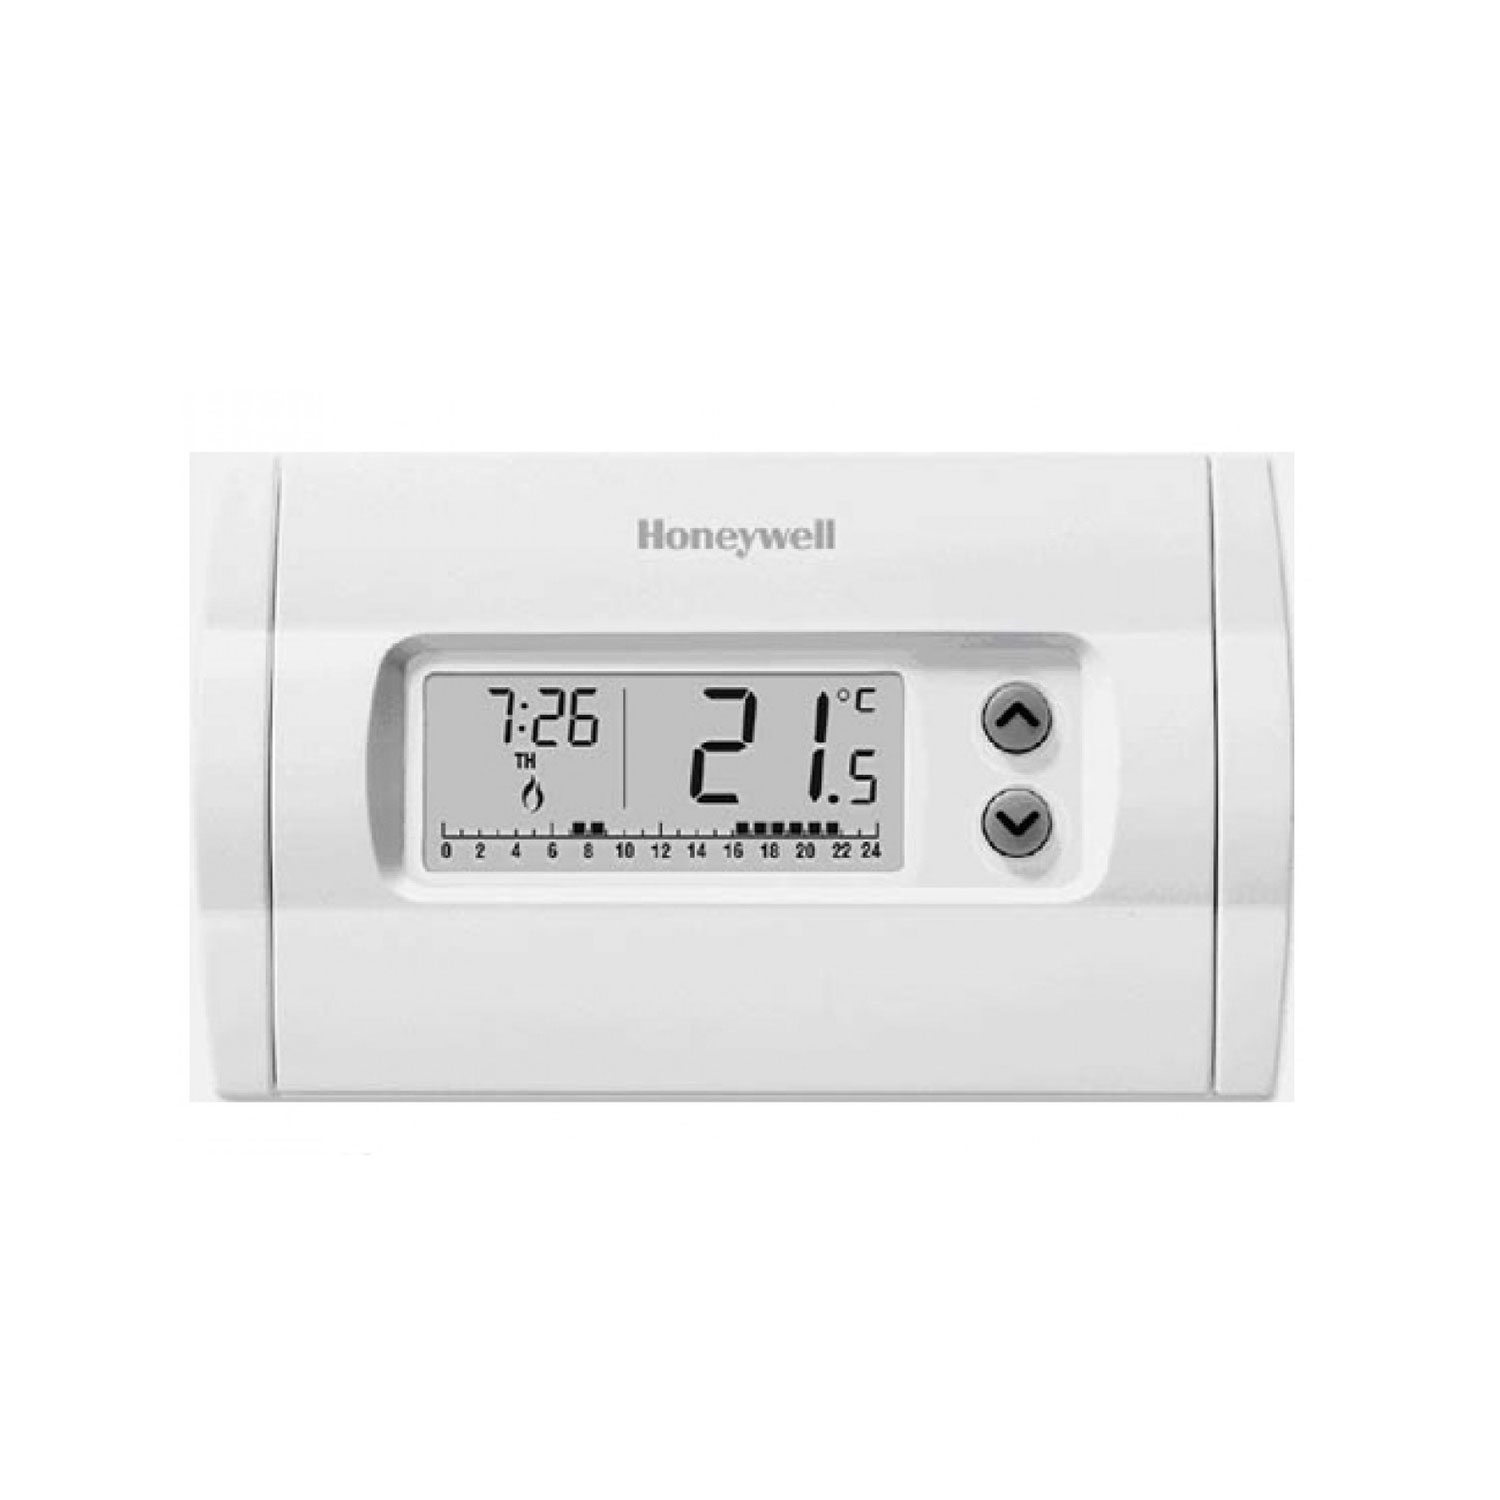 Crono termostato Honeywell cm507 Home J programmazione settimana 2